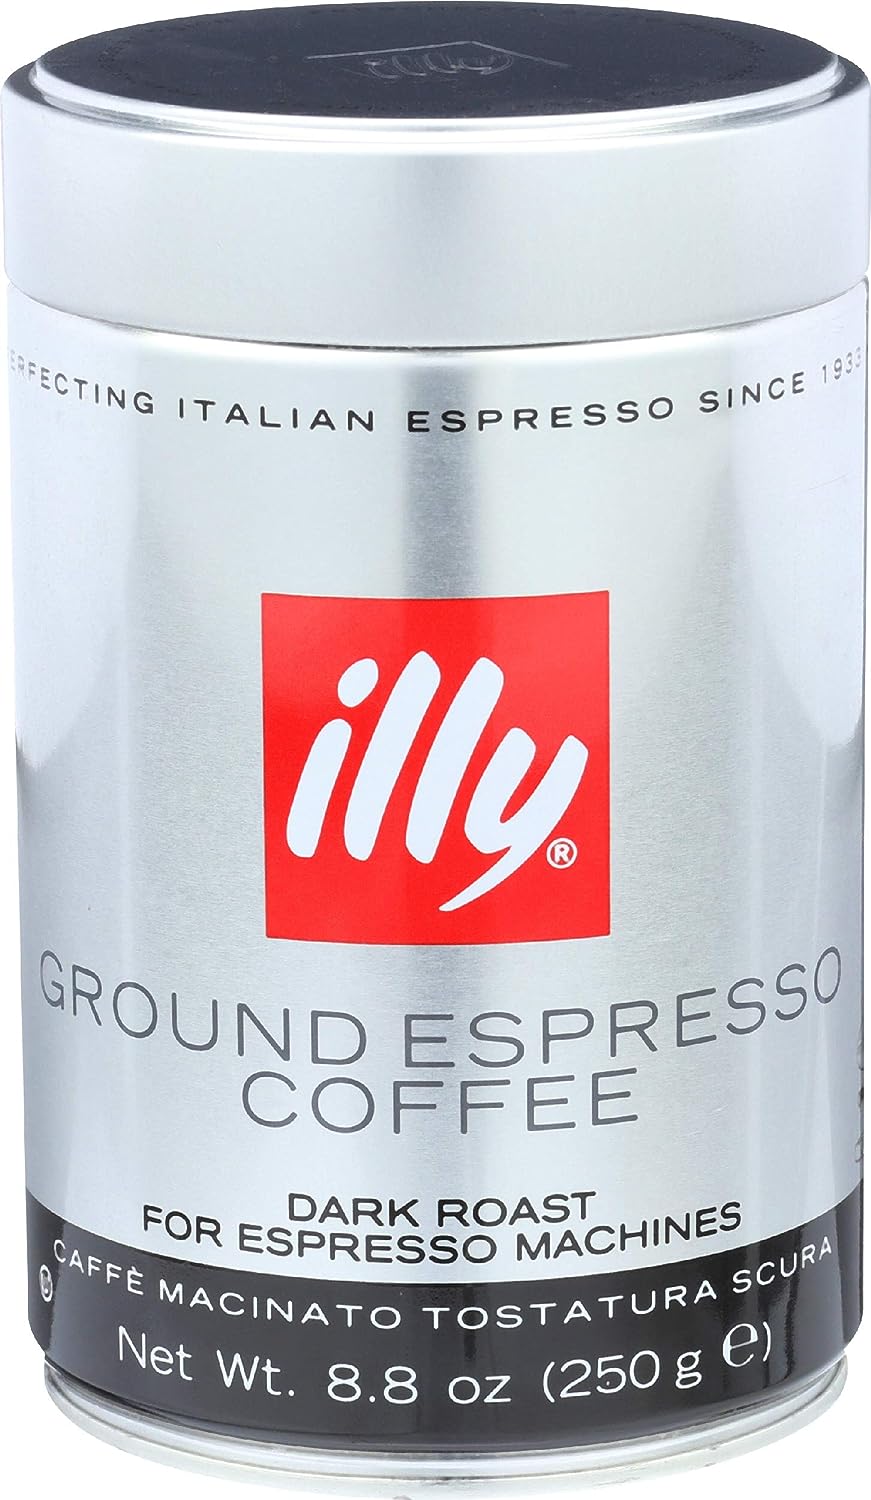 Illycaffe, Ground Espresso Coffee Dark Roast